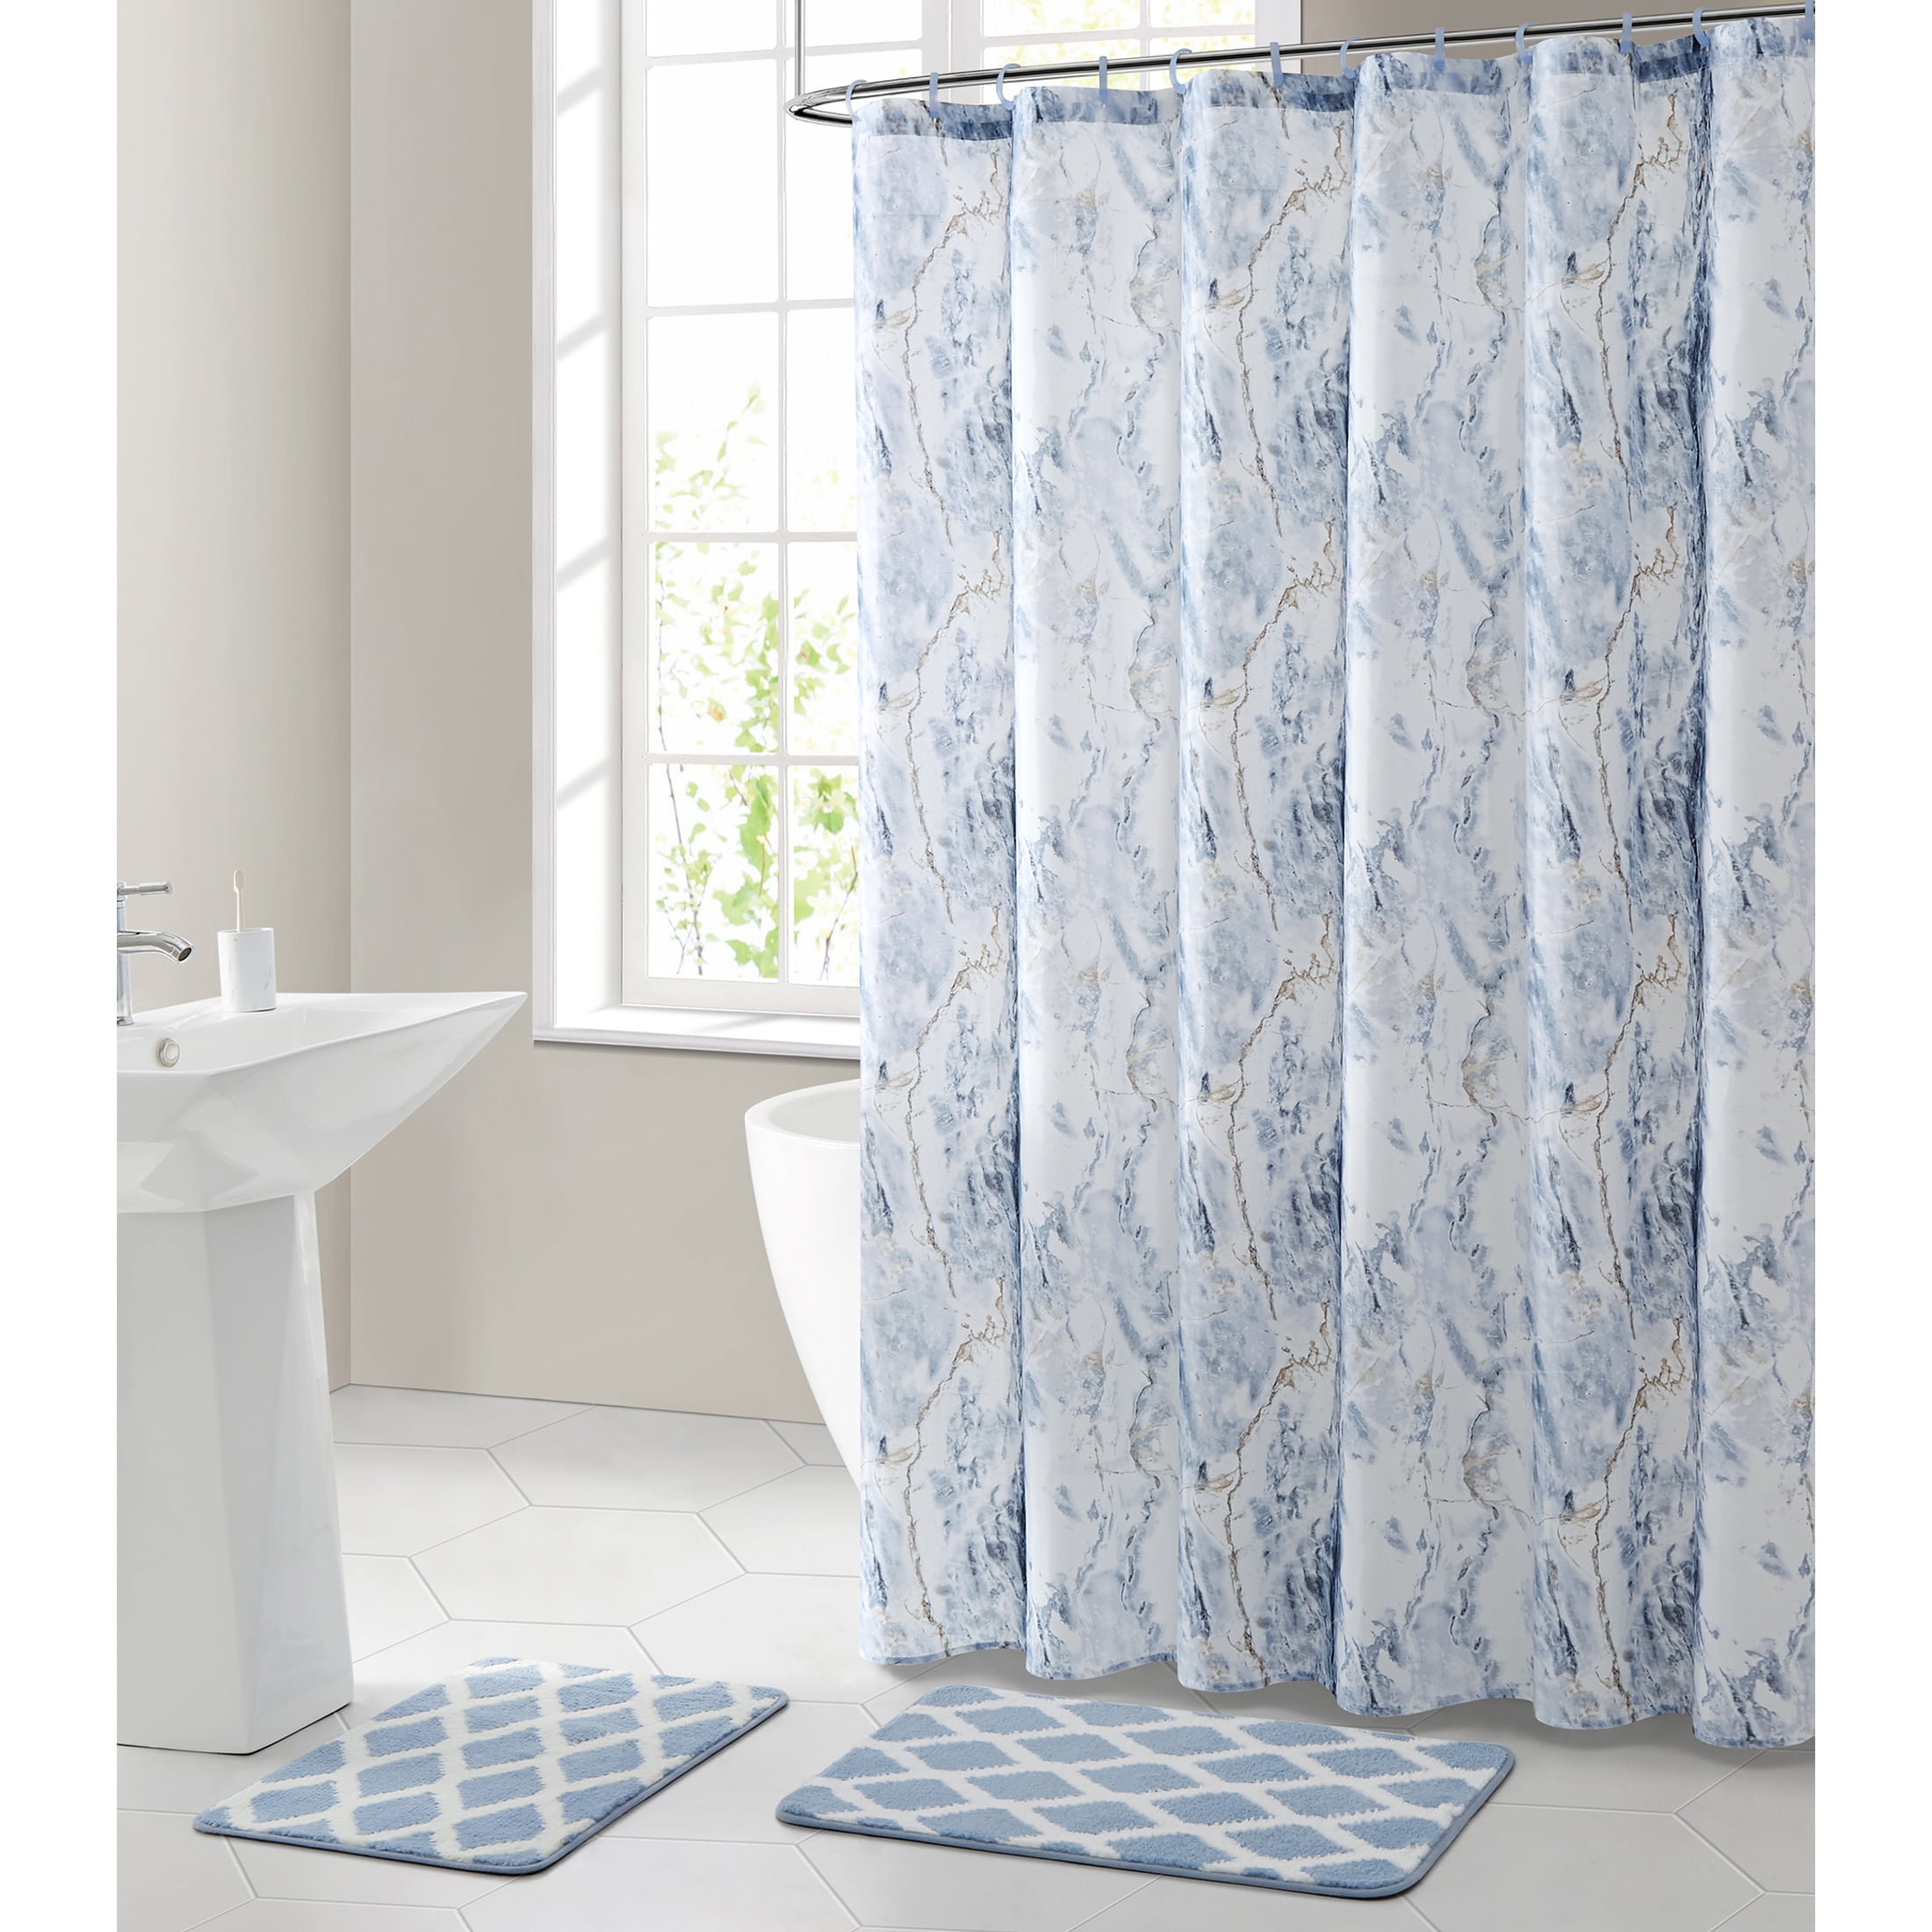 Wood floor pattern Background Shower Curtain Bathroom Supplies Waterproof 